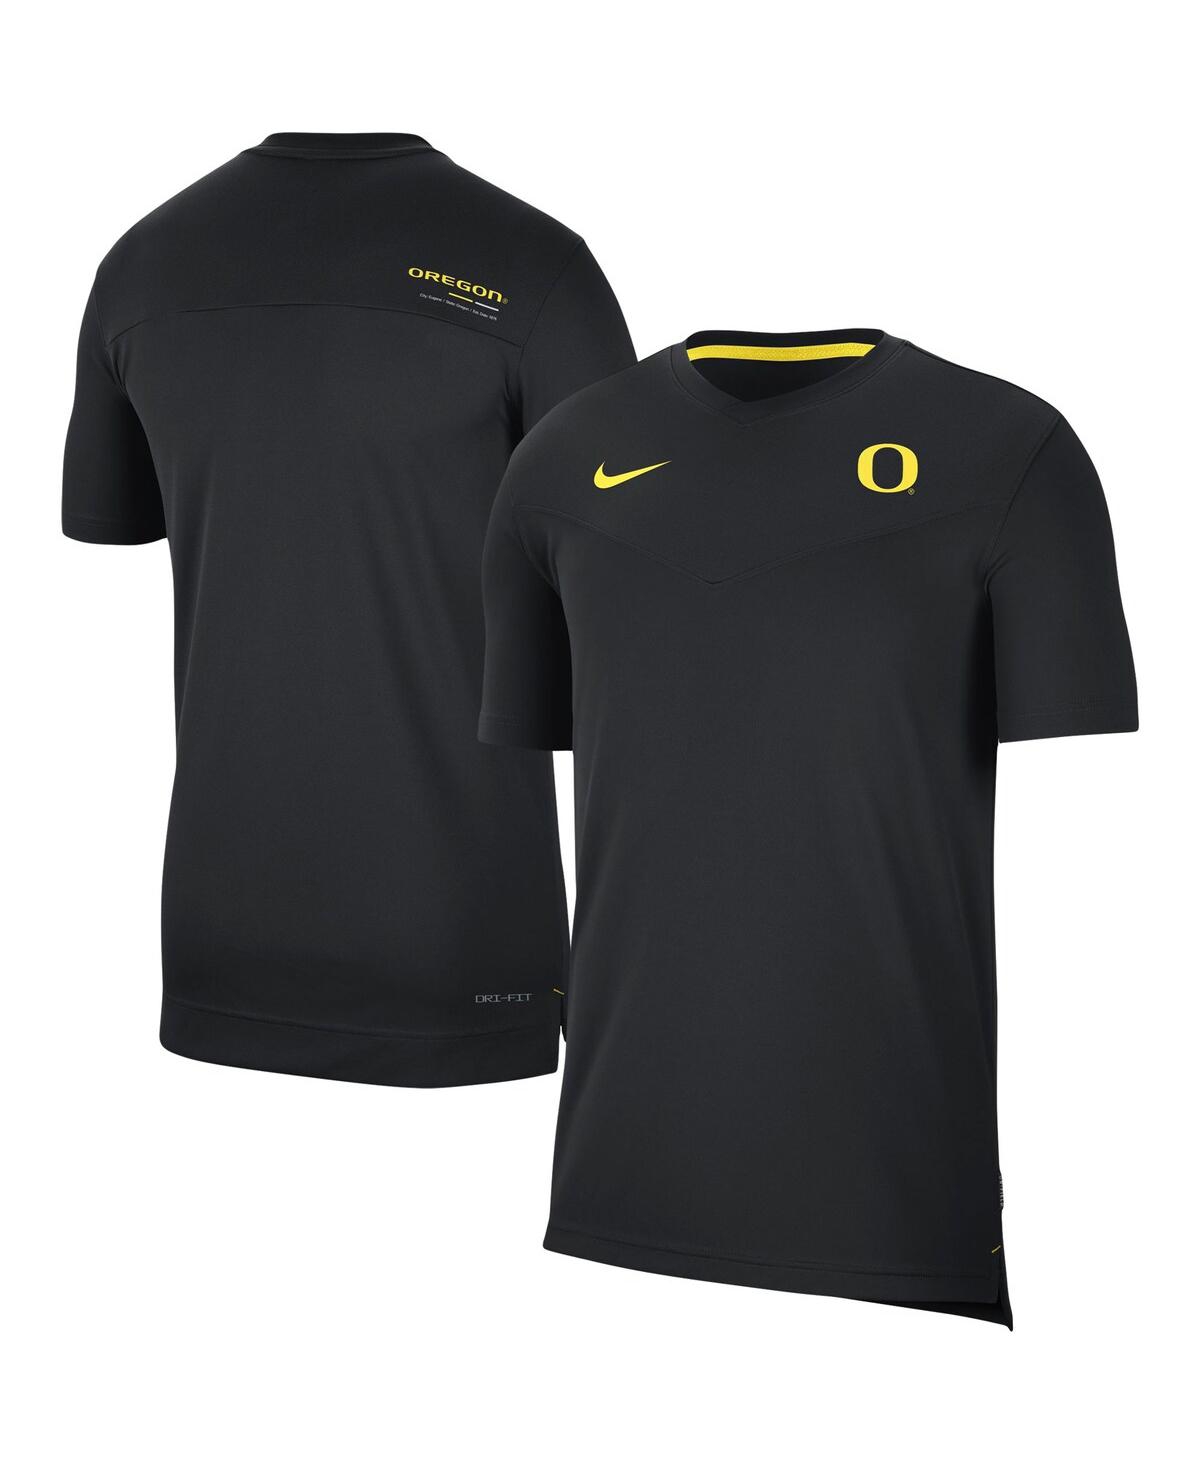 Men's Nike Black Oregon Ducks Coach Uv Performance T-shirt